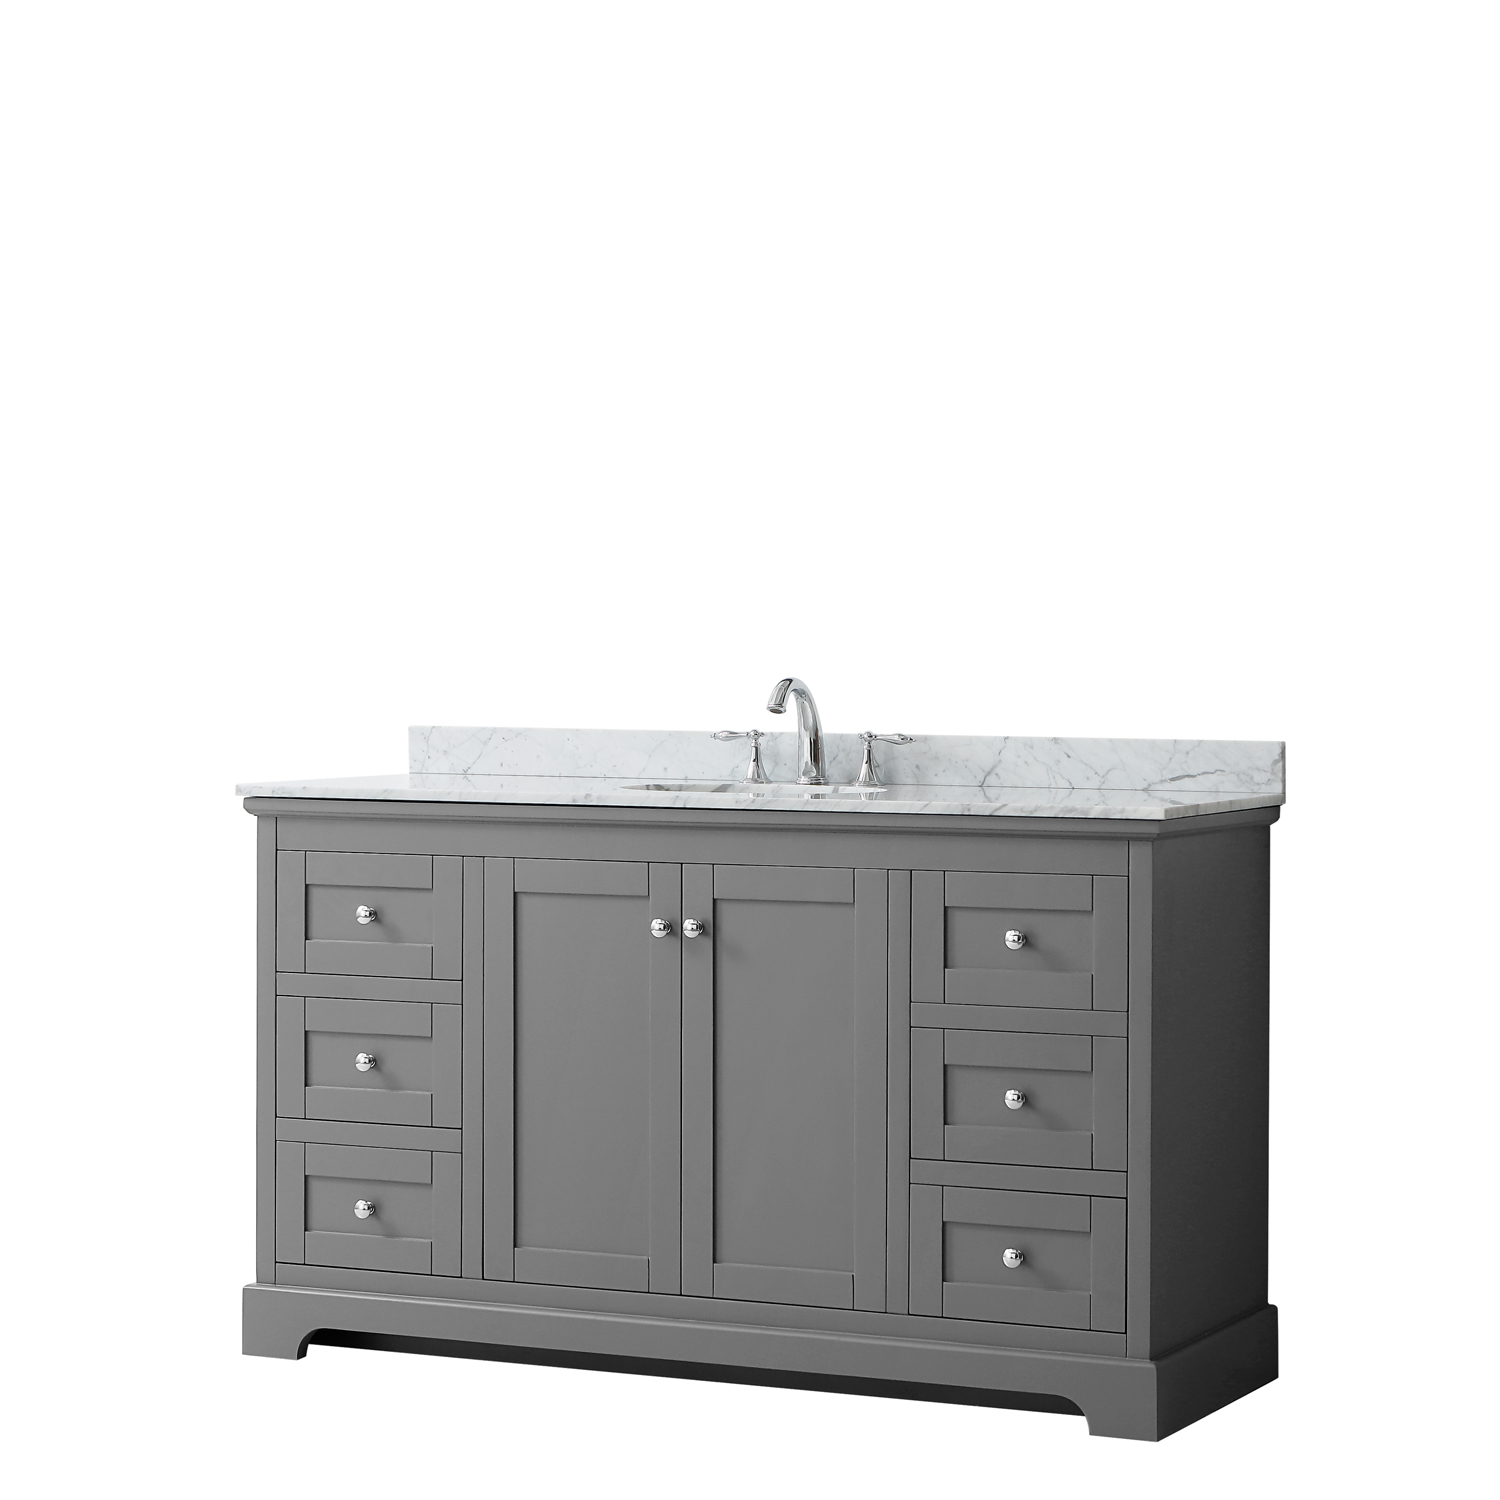 60" Single Bathroom Vanity in Dark Gray, No Countertop, No Sink, and No Mirror